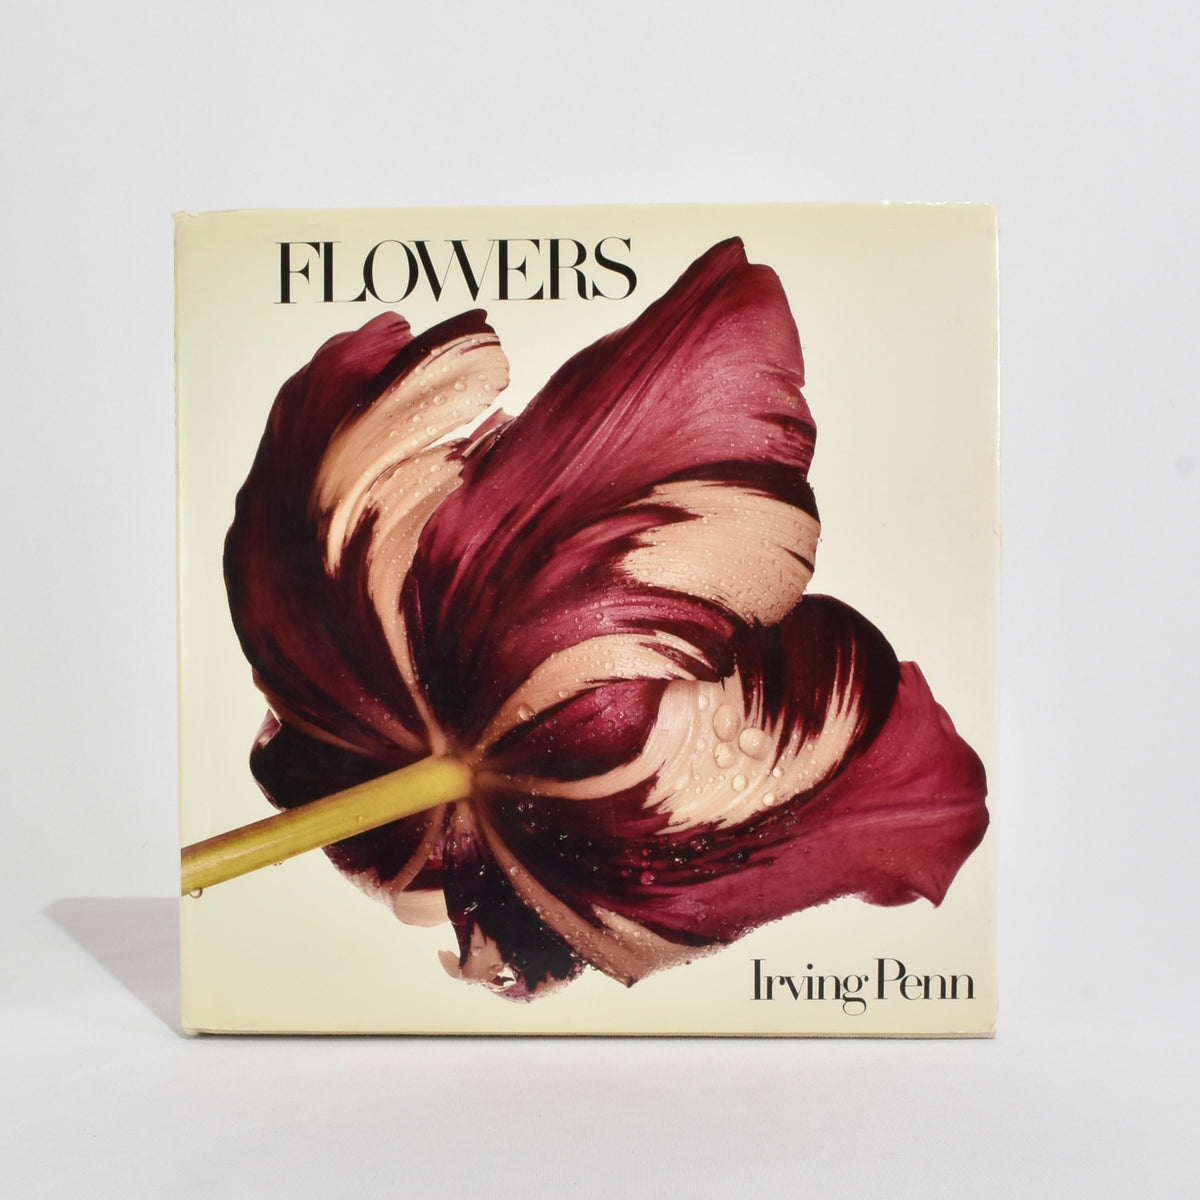 Irving Penn: Flowers